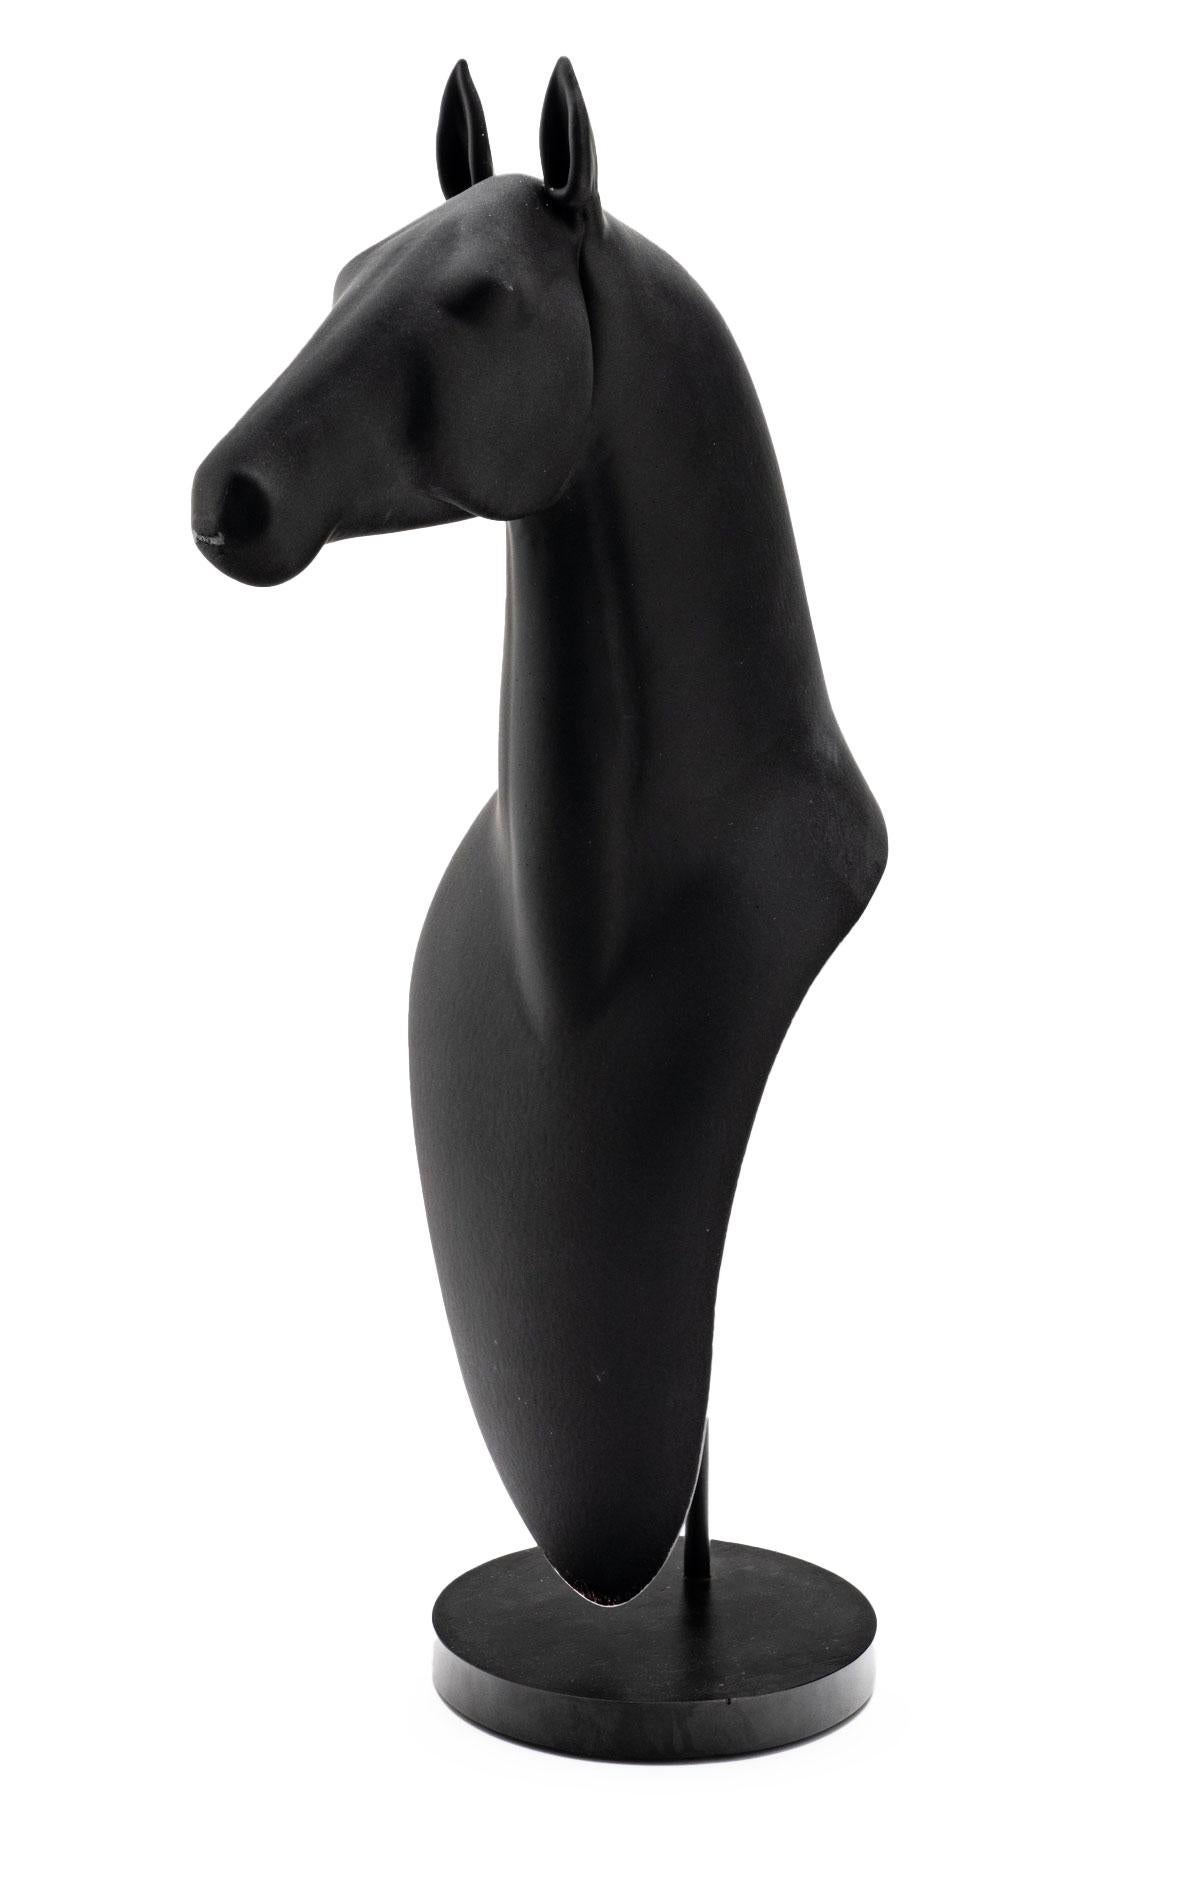 Jane's Horse (Negrita) - Sculpture by Ross Richmond